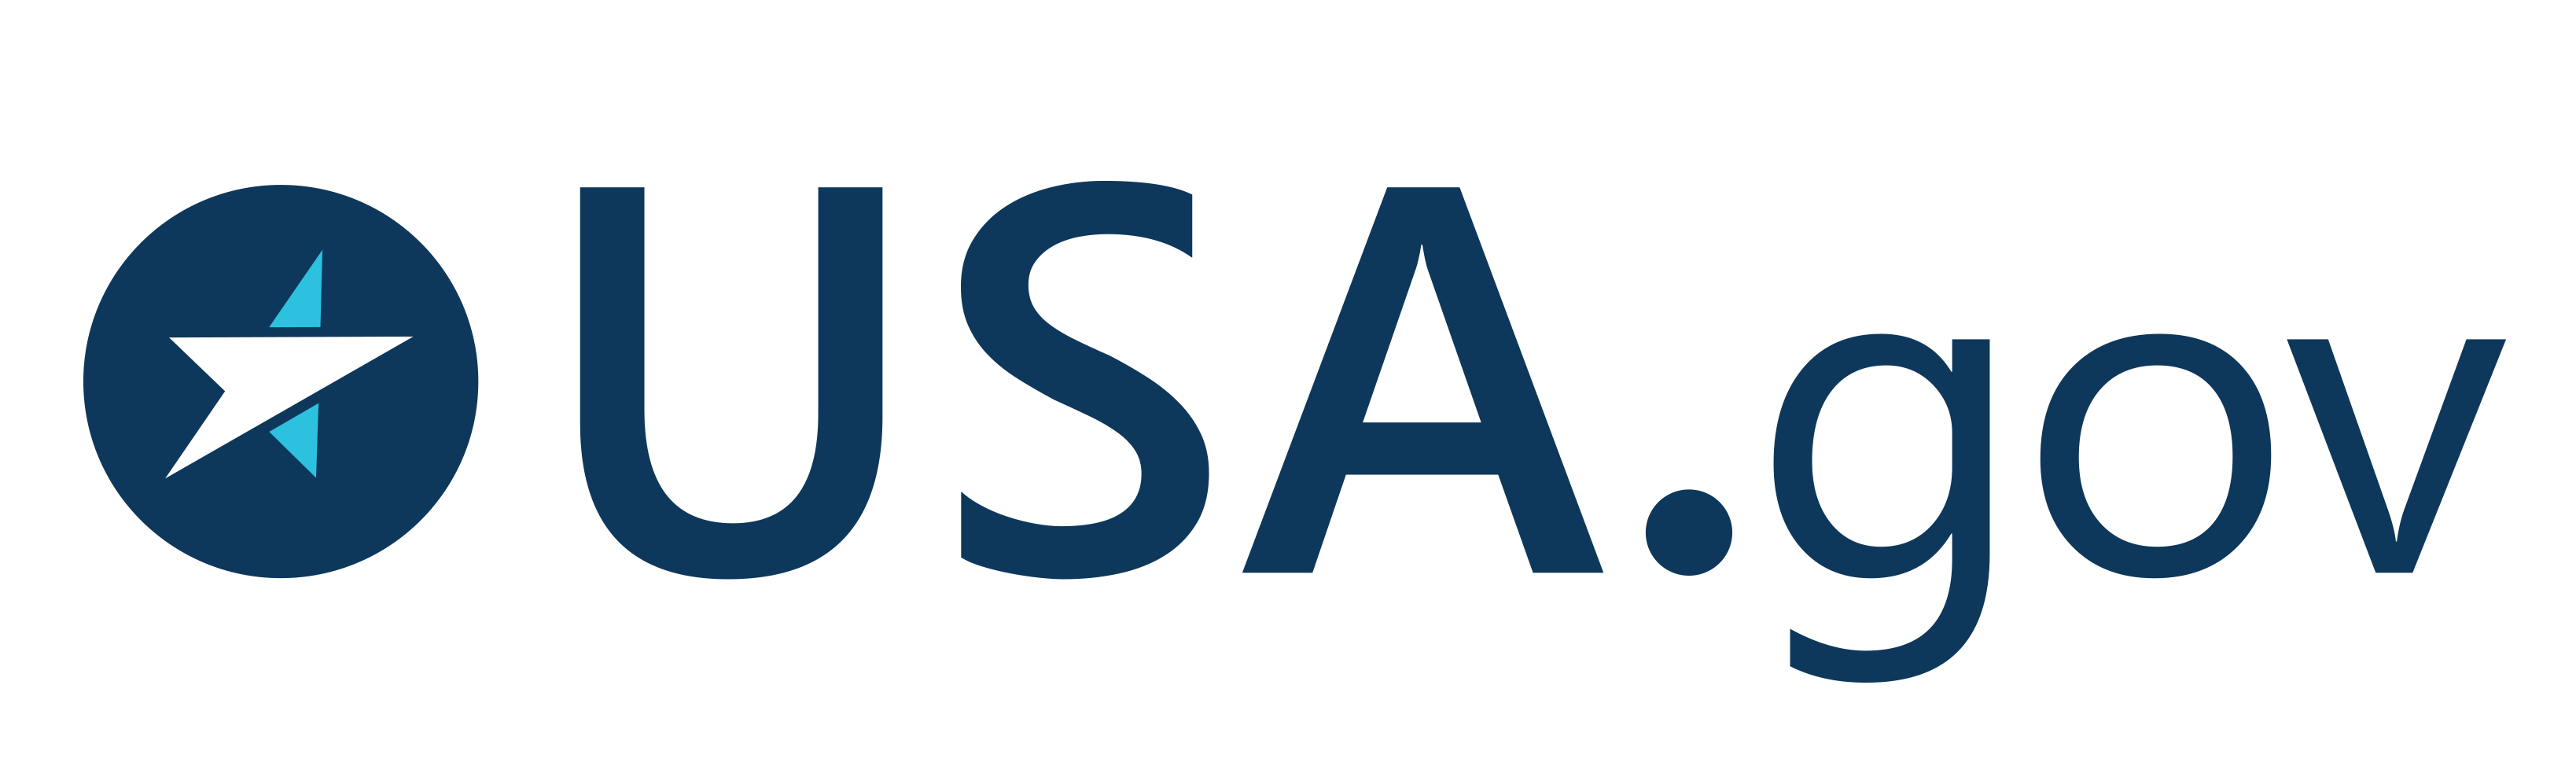 High resolution USA.gov logo